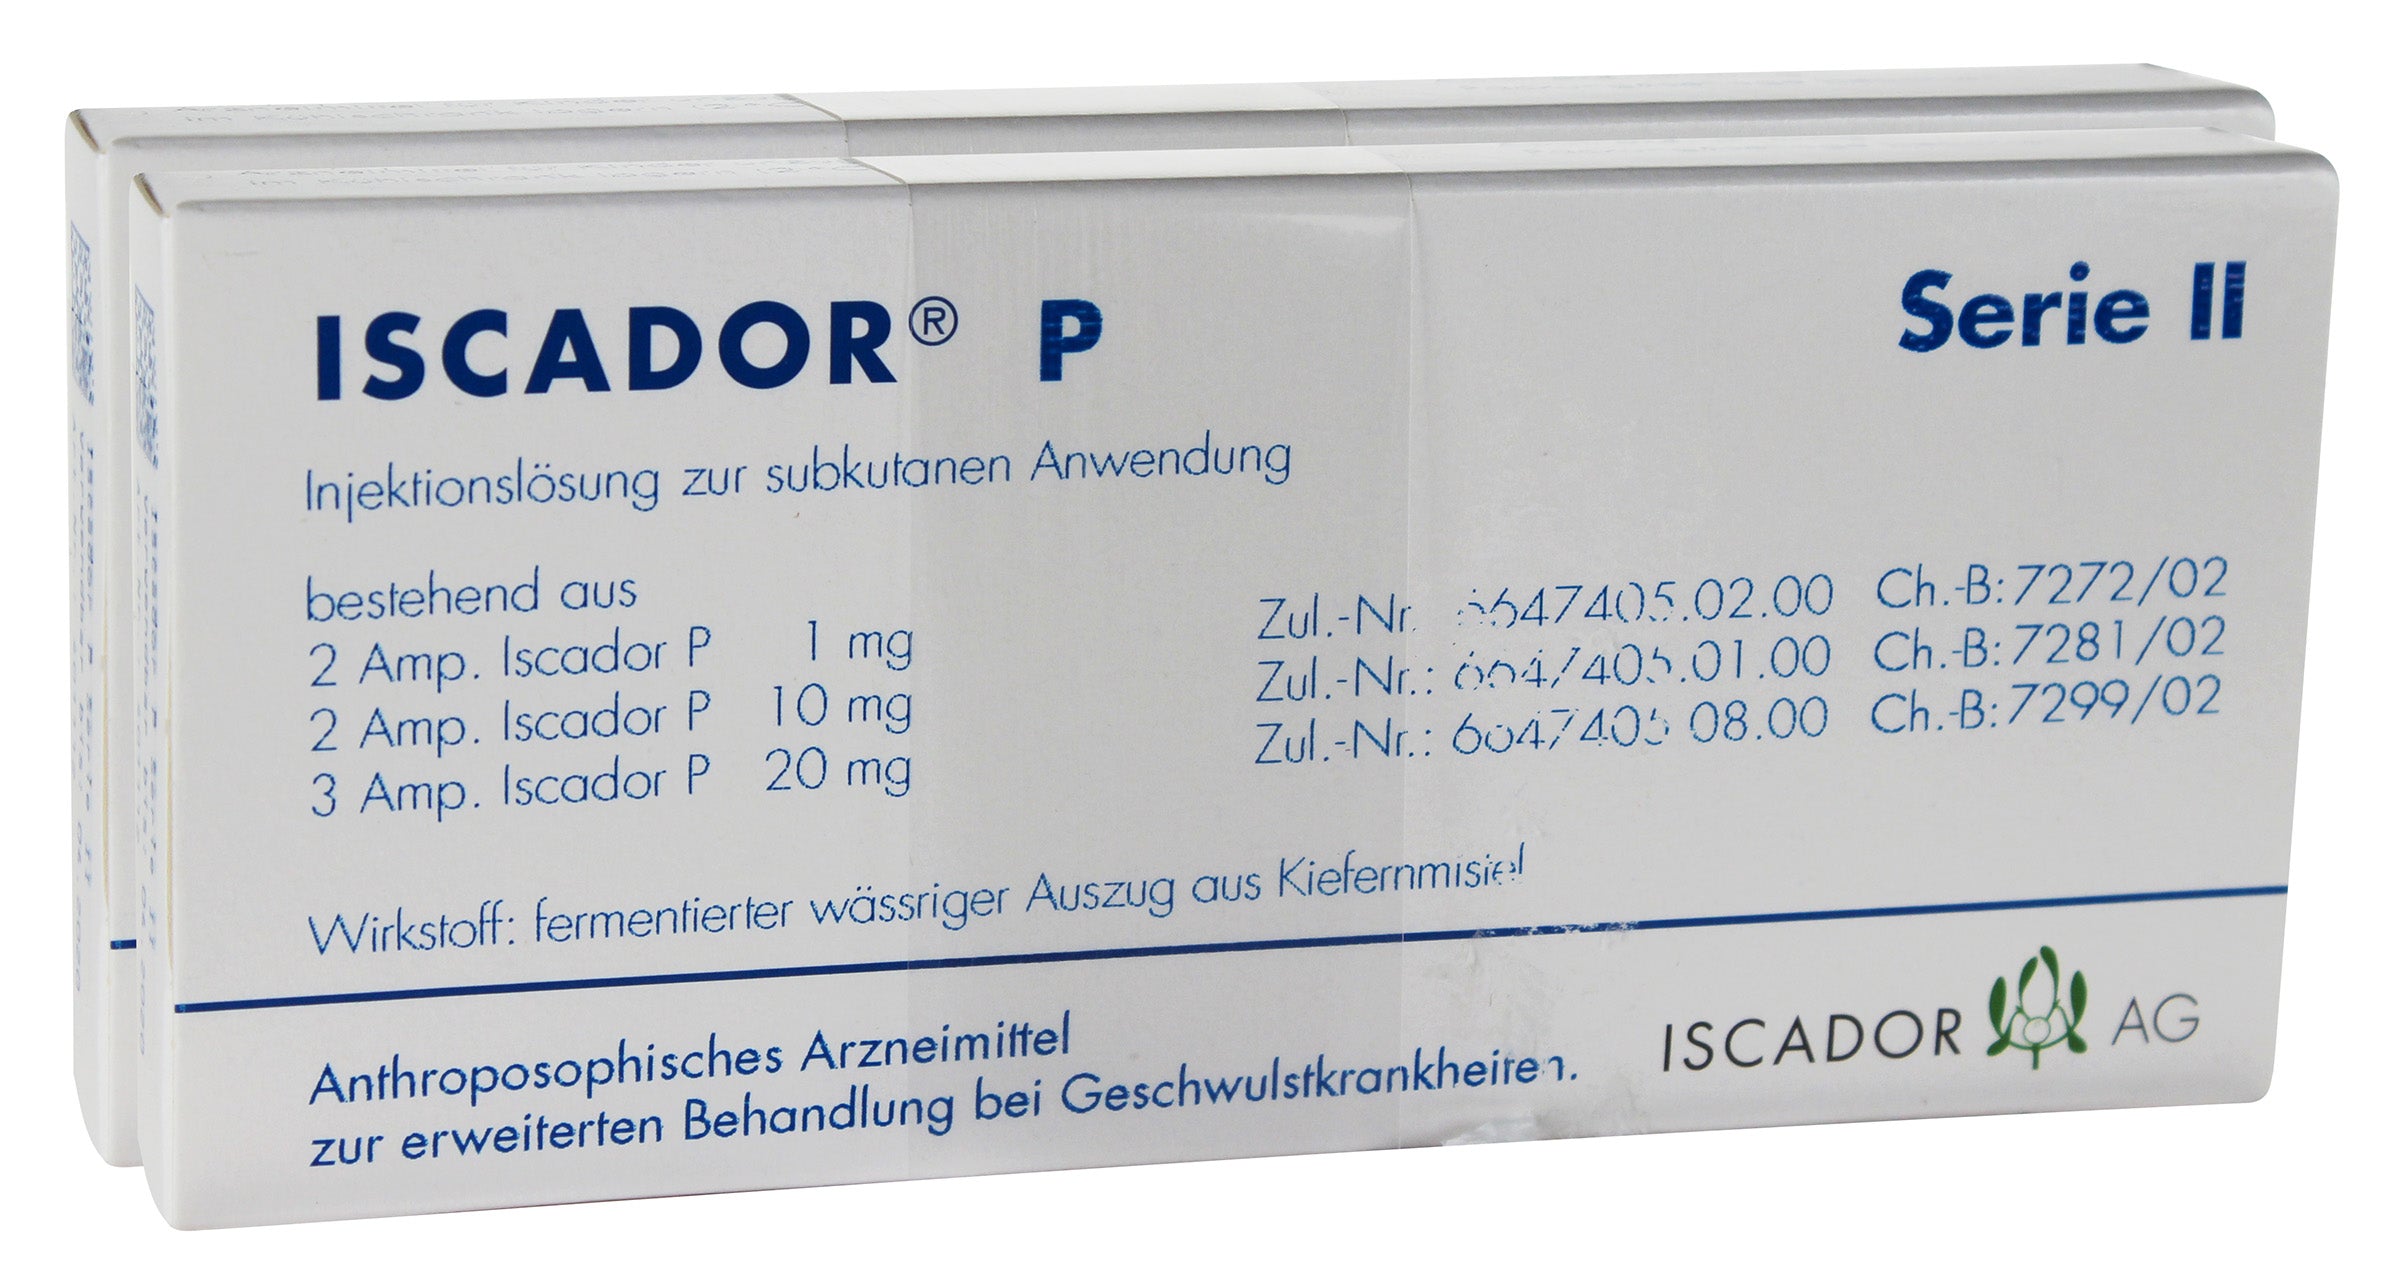 Iscador Pini (P) Series II Liquid